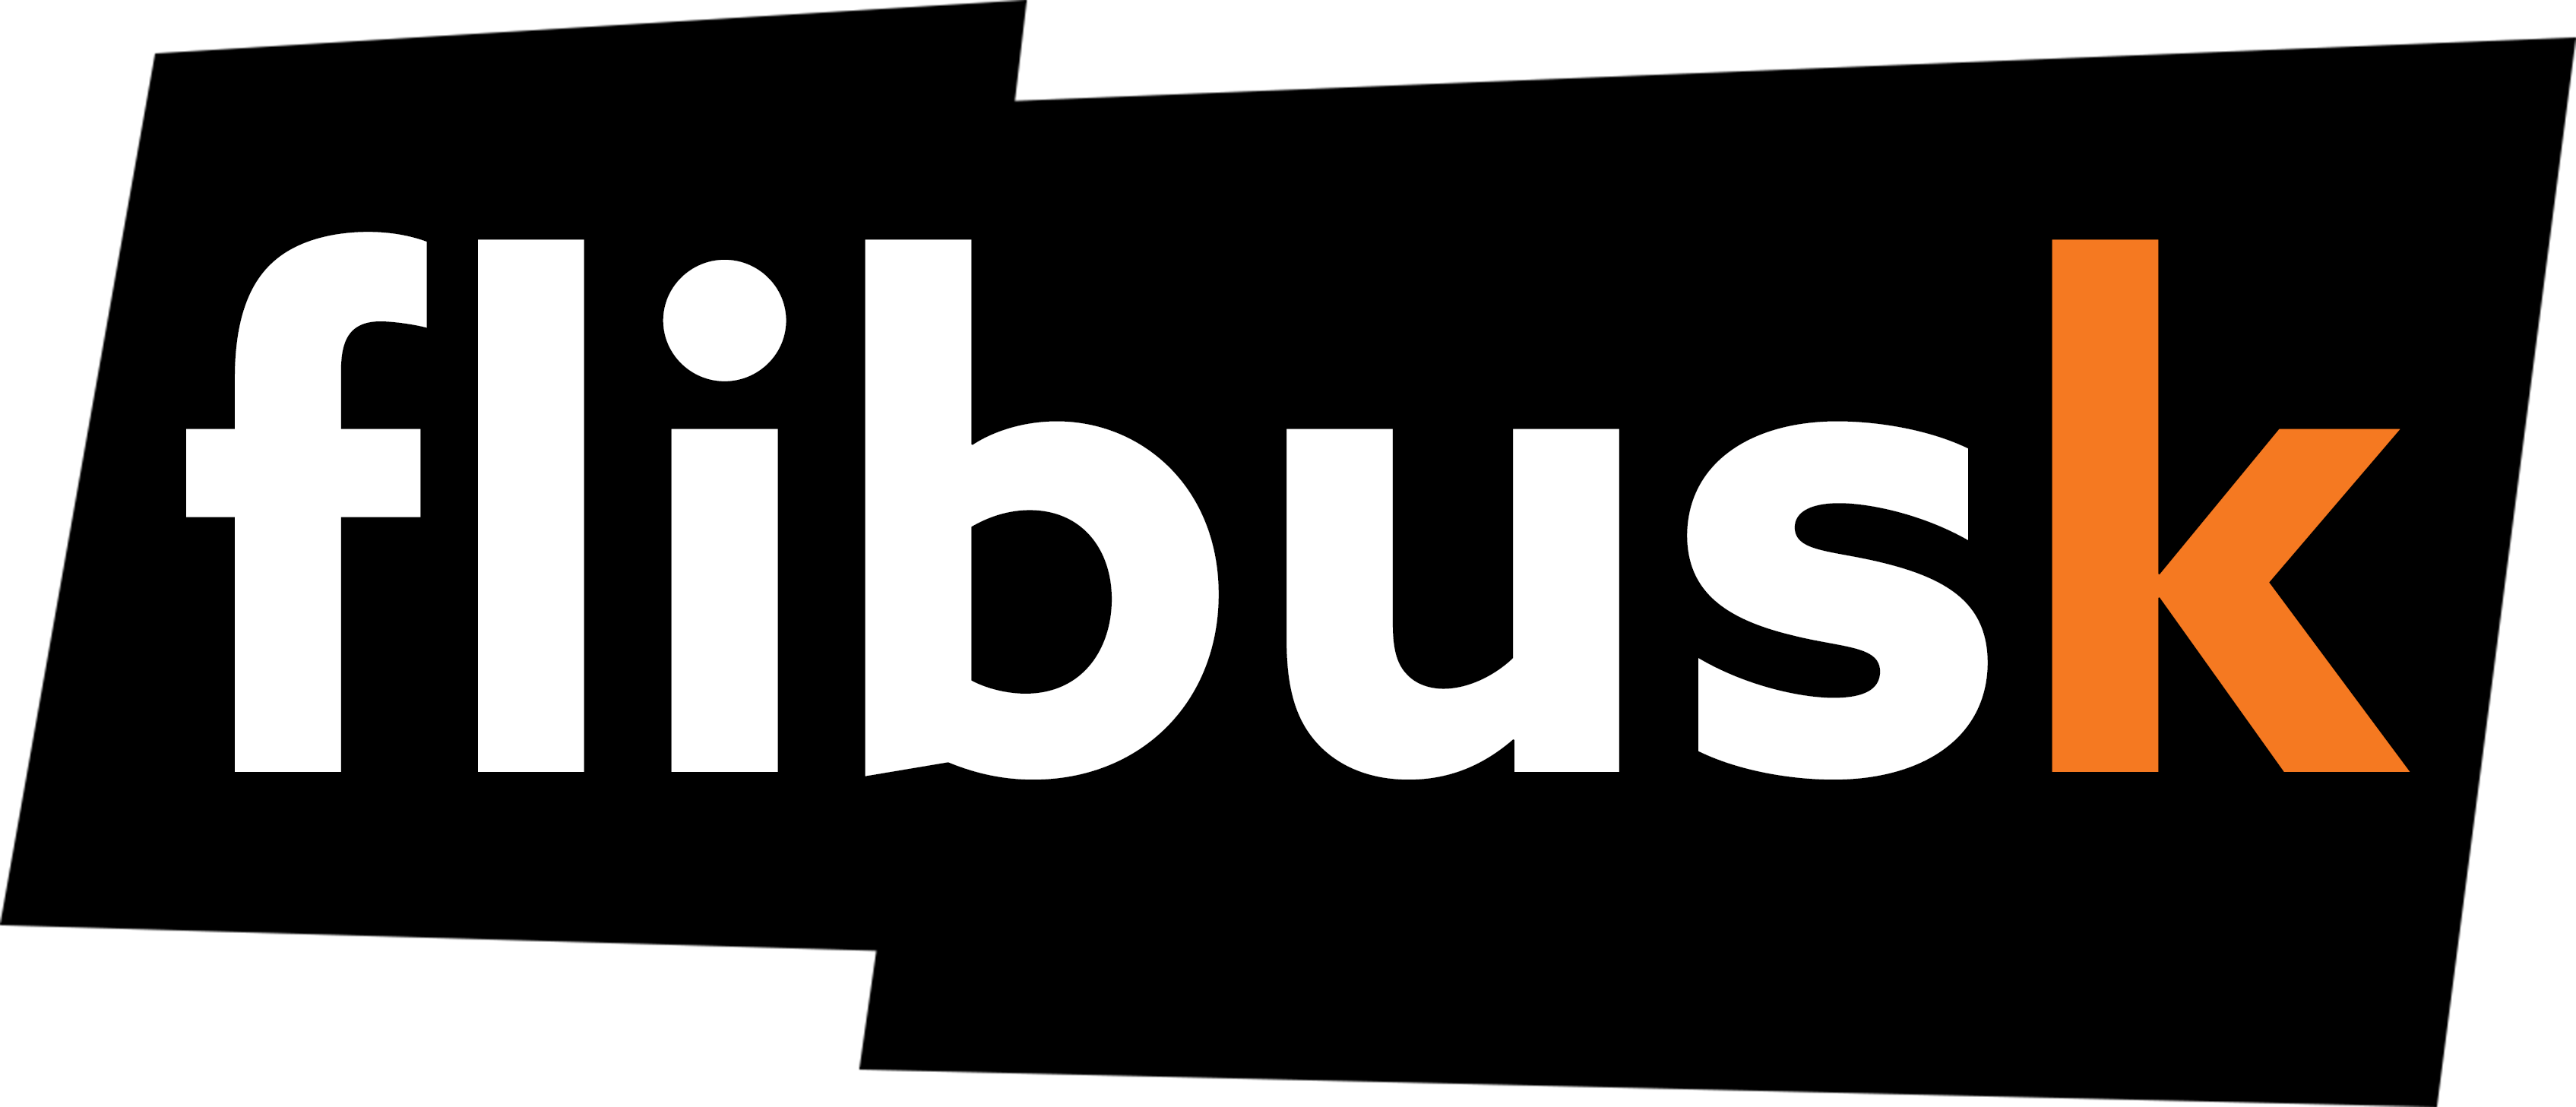 Flibusk_logo_noir